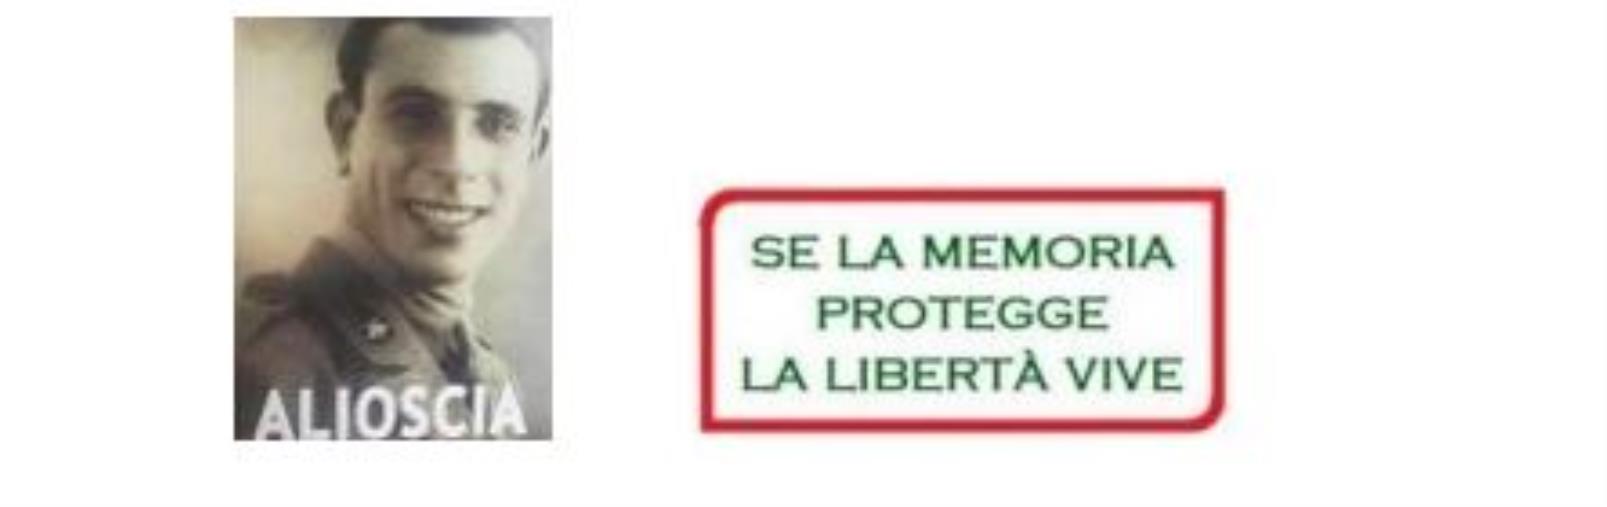 images Lunedì a Reggio Calabria l'omaggio al partigiano Franco Sergio “Alioscia”
